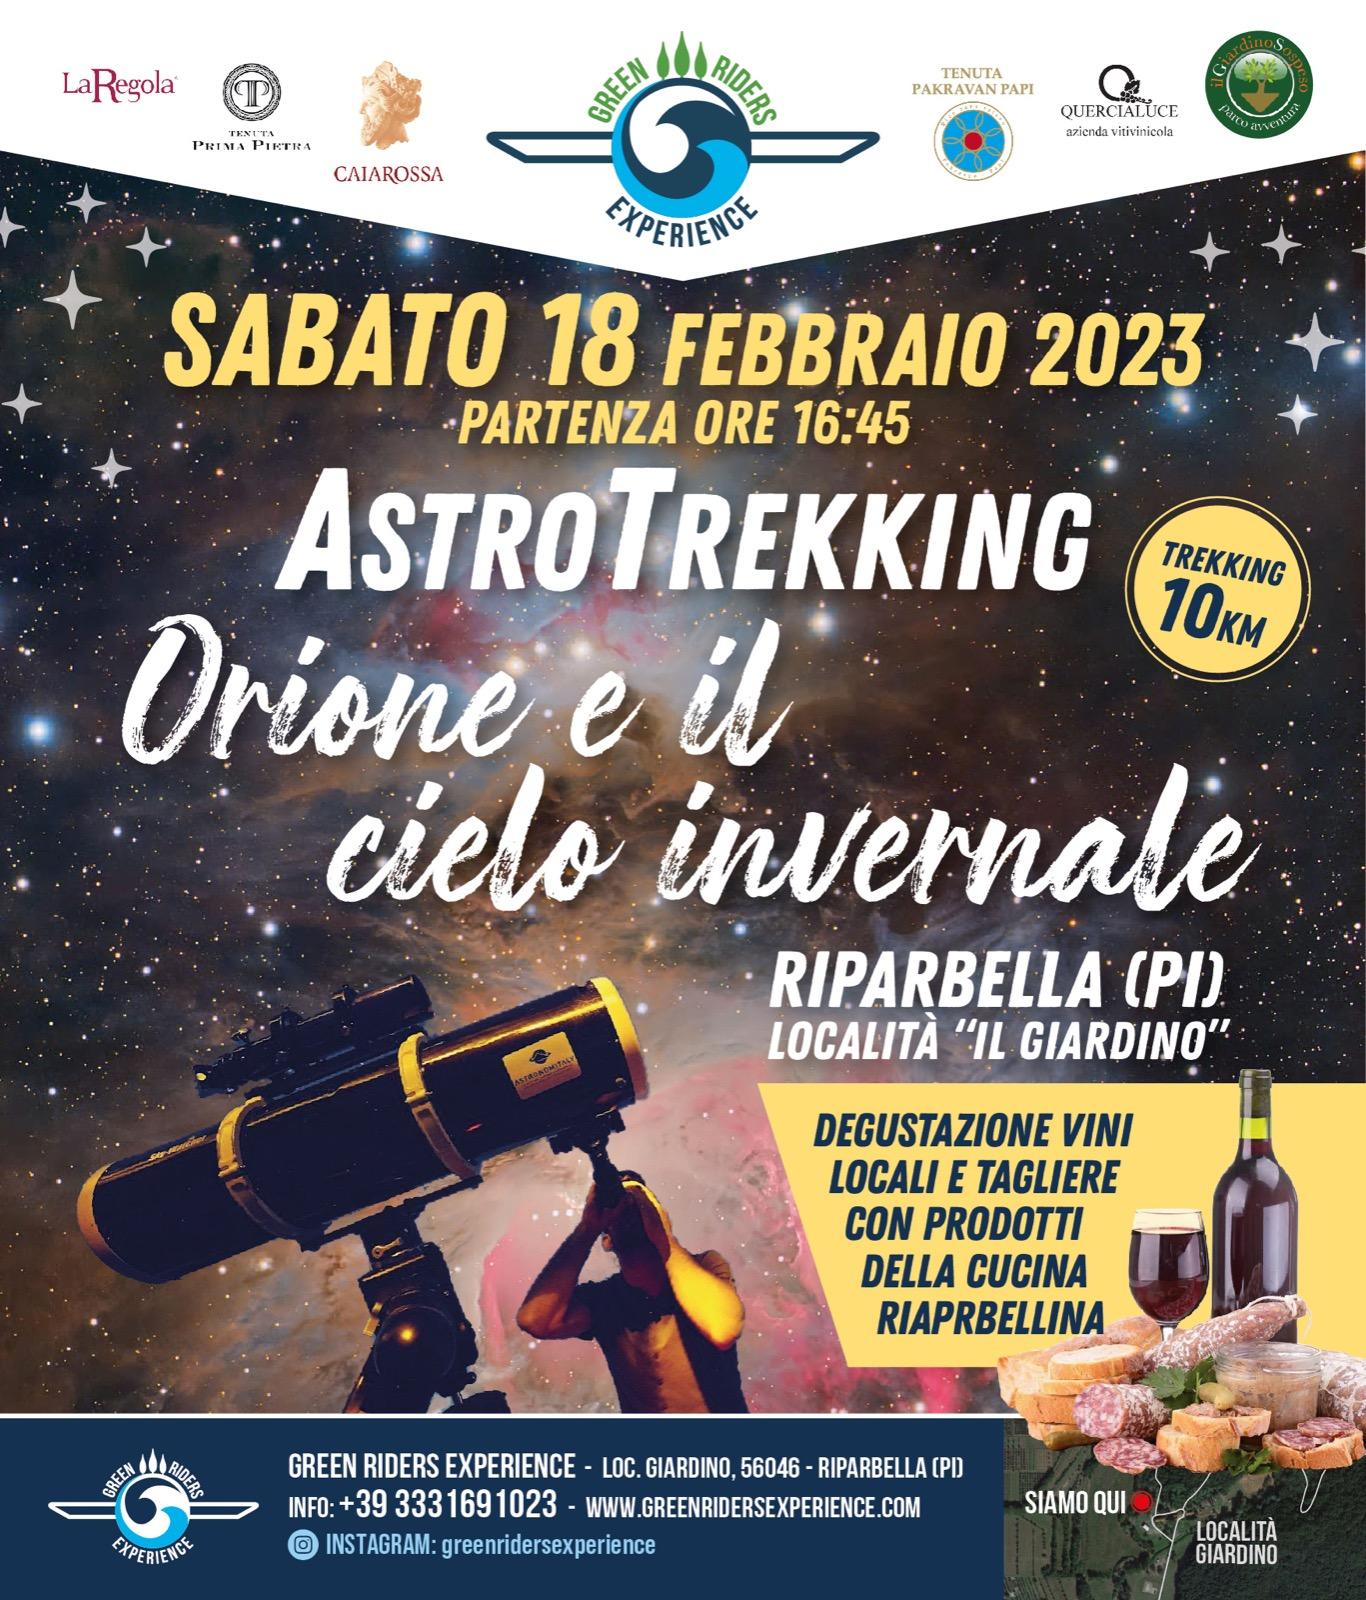 ASTROTREKKING " ORIONE E IL CIELO STELLATO INVERNALE"   SABATO 18 FEBBRAIO 2023